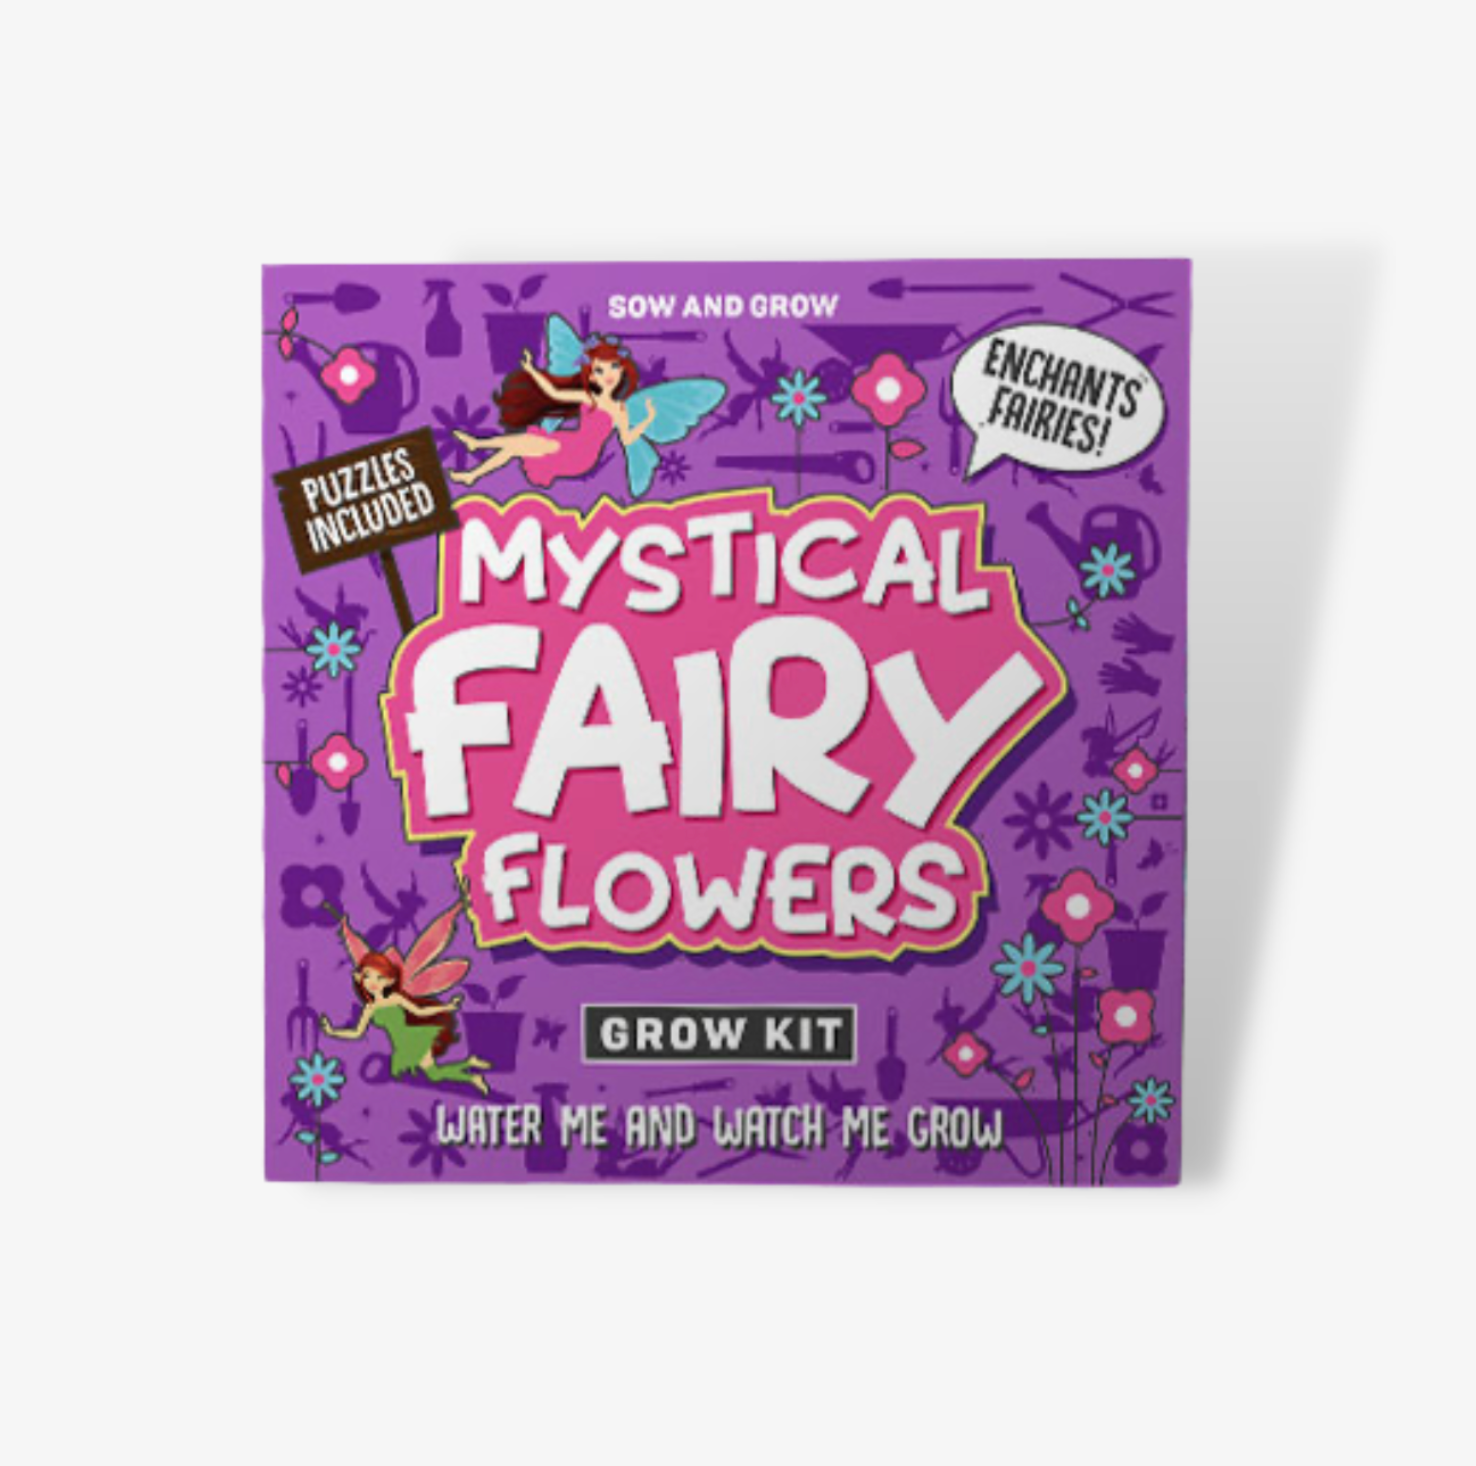 Grow Your Own Mystical Fairy Flowers